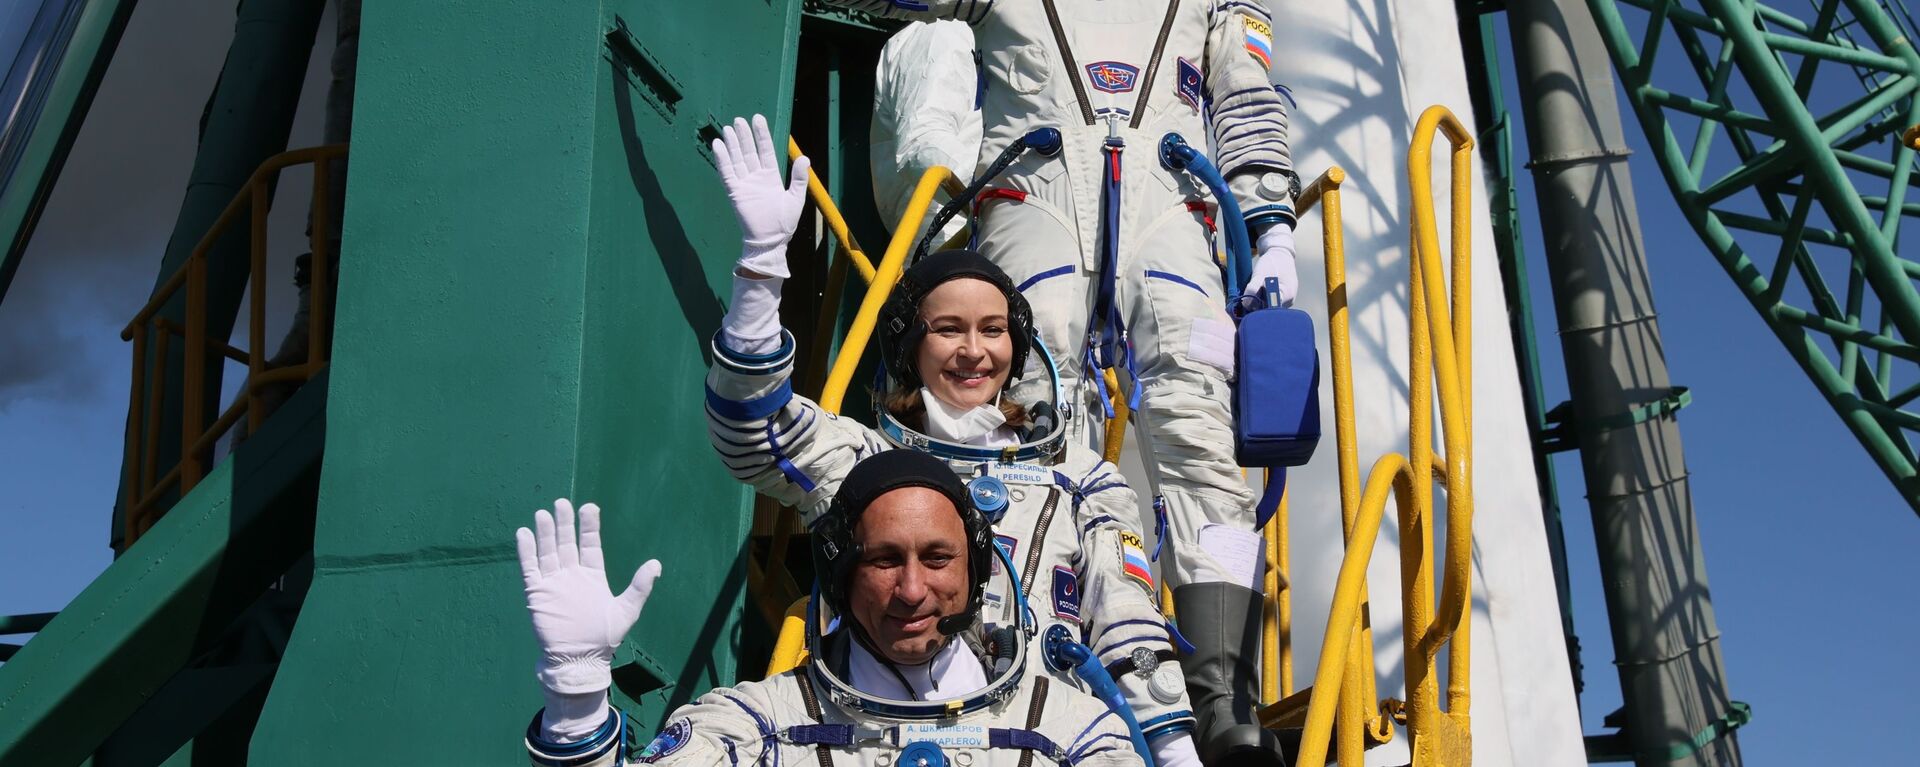 Члены основного экипажа 66-й экспедиции на Международную космическую станцию перед стартом космического корабля Союз МС-19  - Sputnik Србија, 1920, 16.10.2021